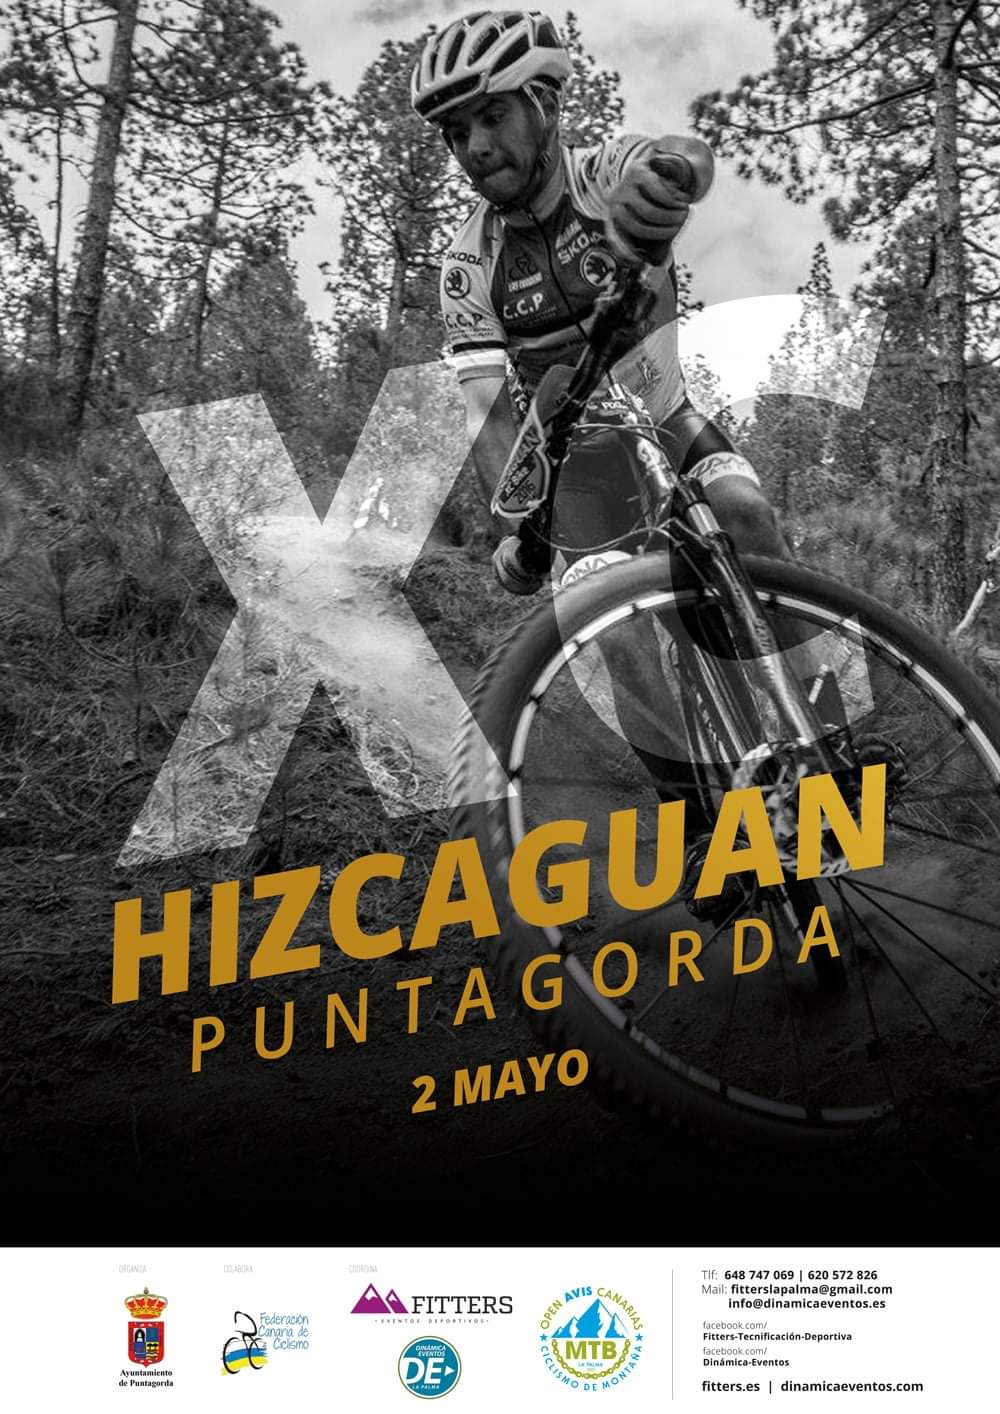 El XC HIZCAGUAN, una llamativa propuesta para los amantes del mountain bike